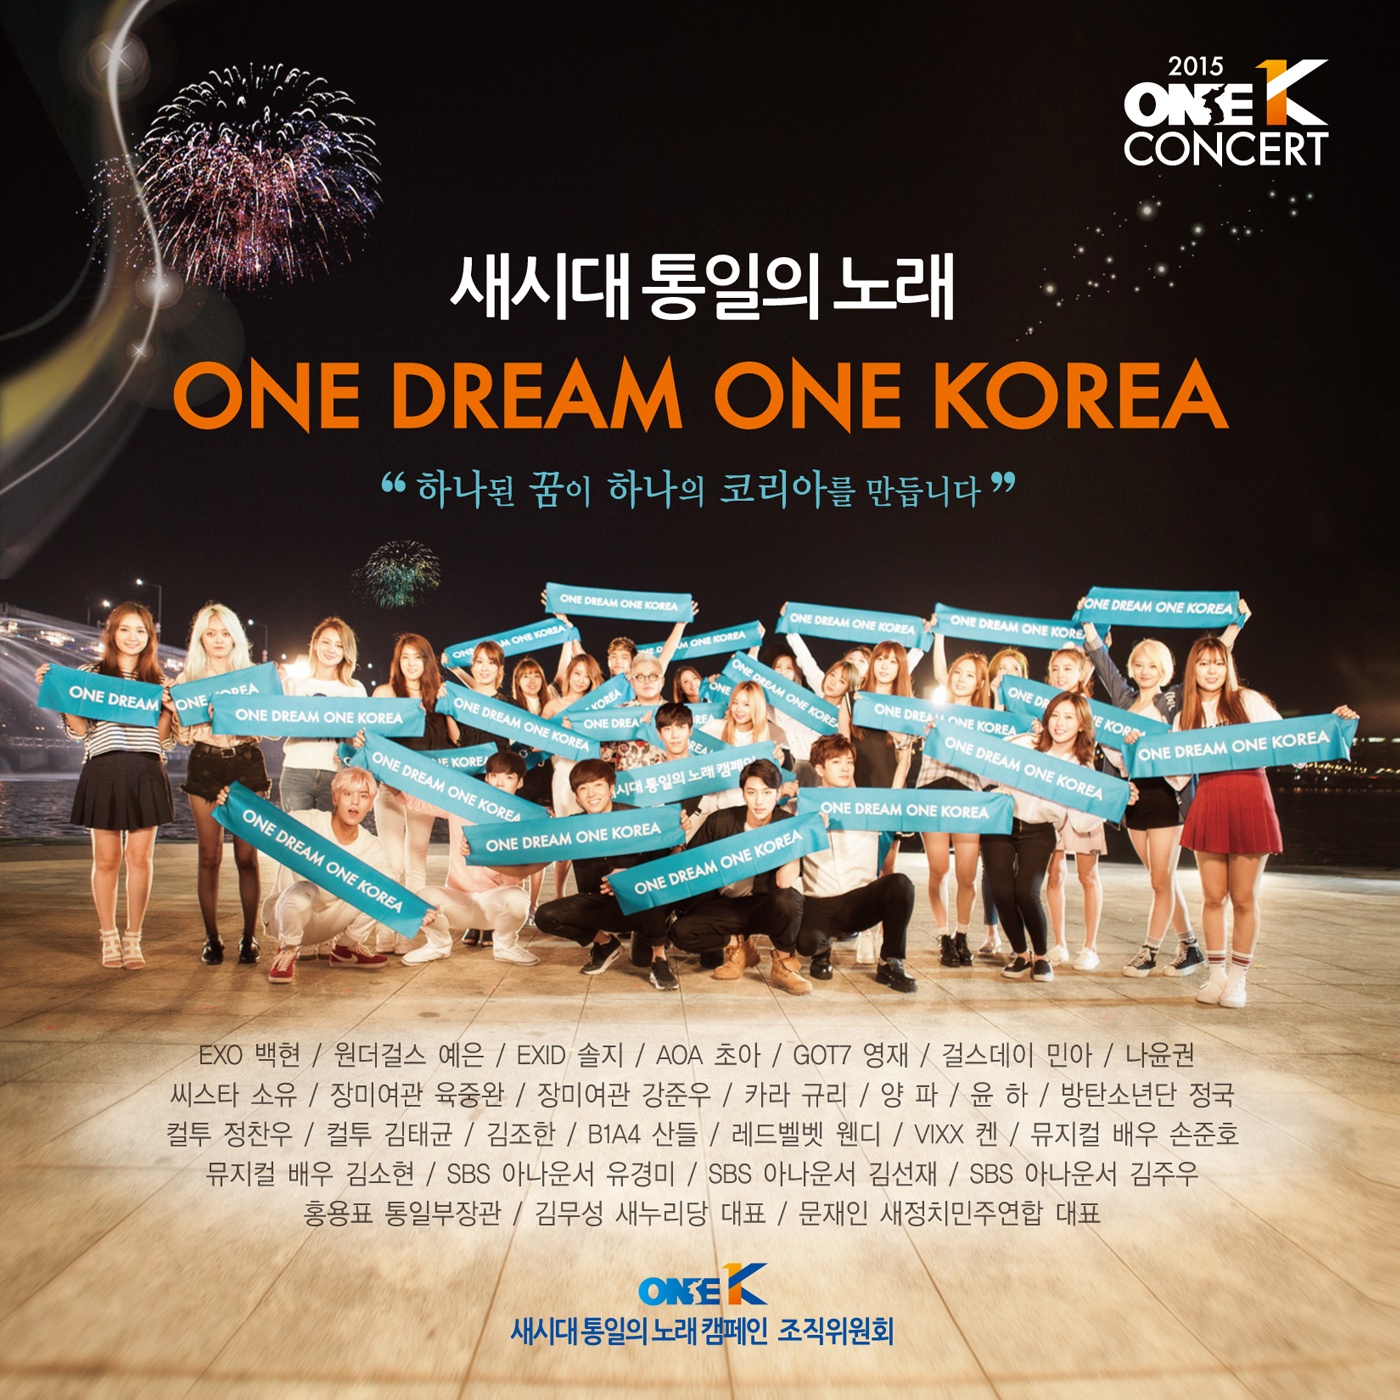 One Dream One Korea